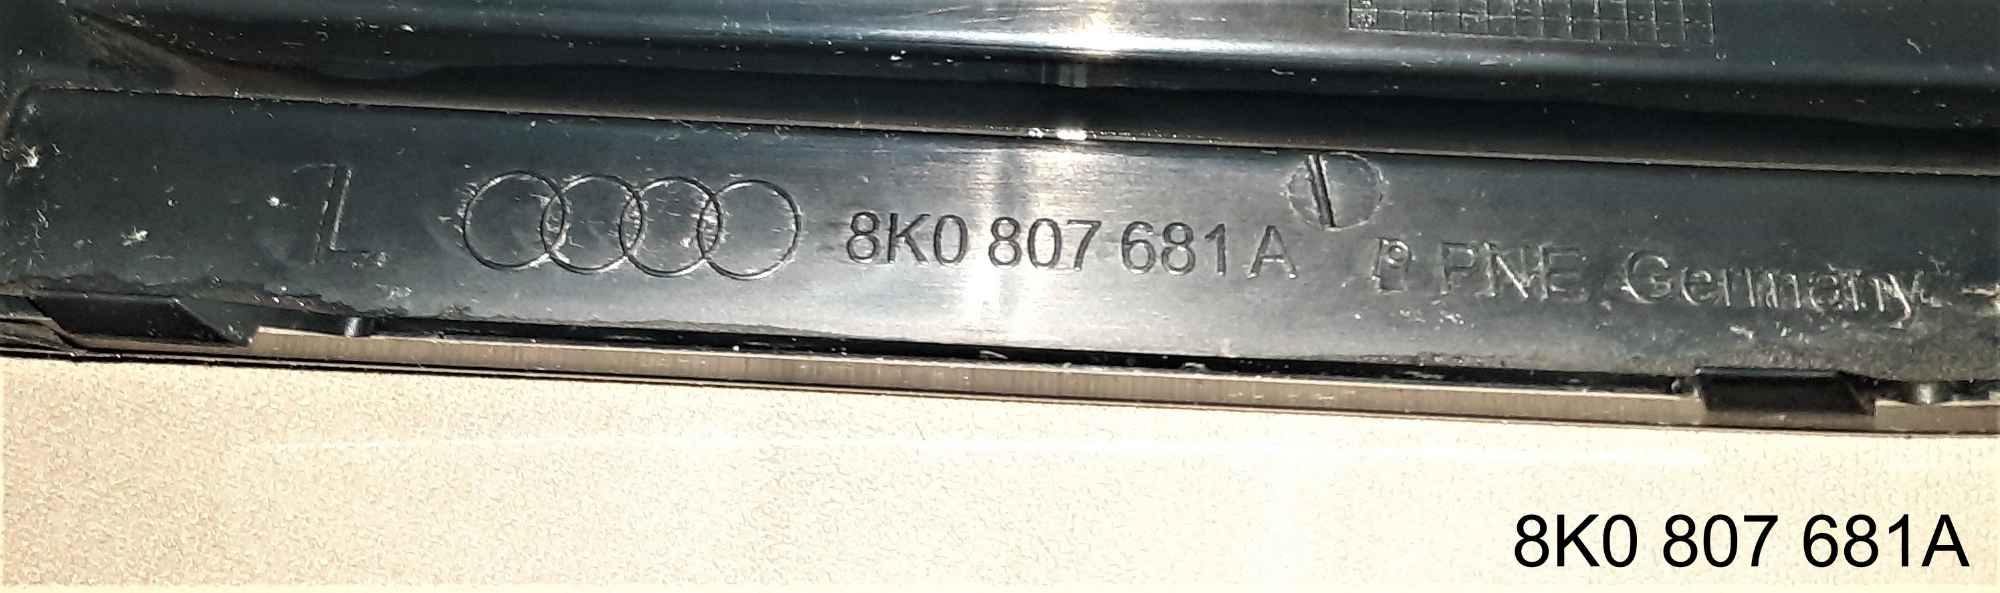 Oryginalna kratka halogenowa AUDI A4 B8 (lewa strona) Jaworzno - zdjęcie 3